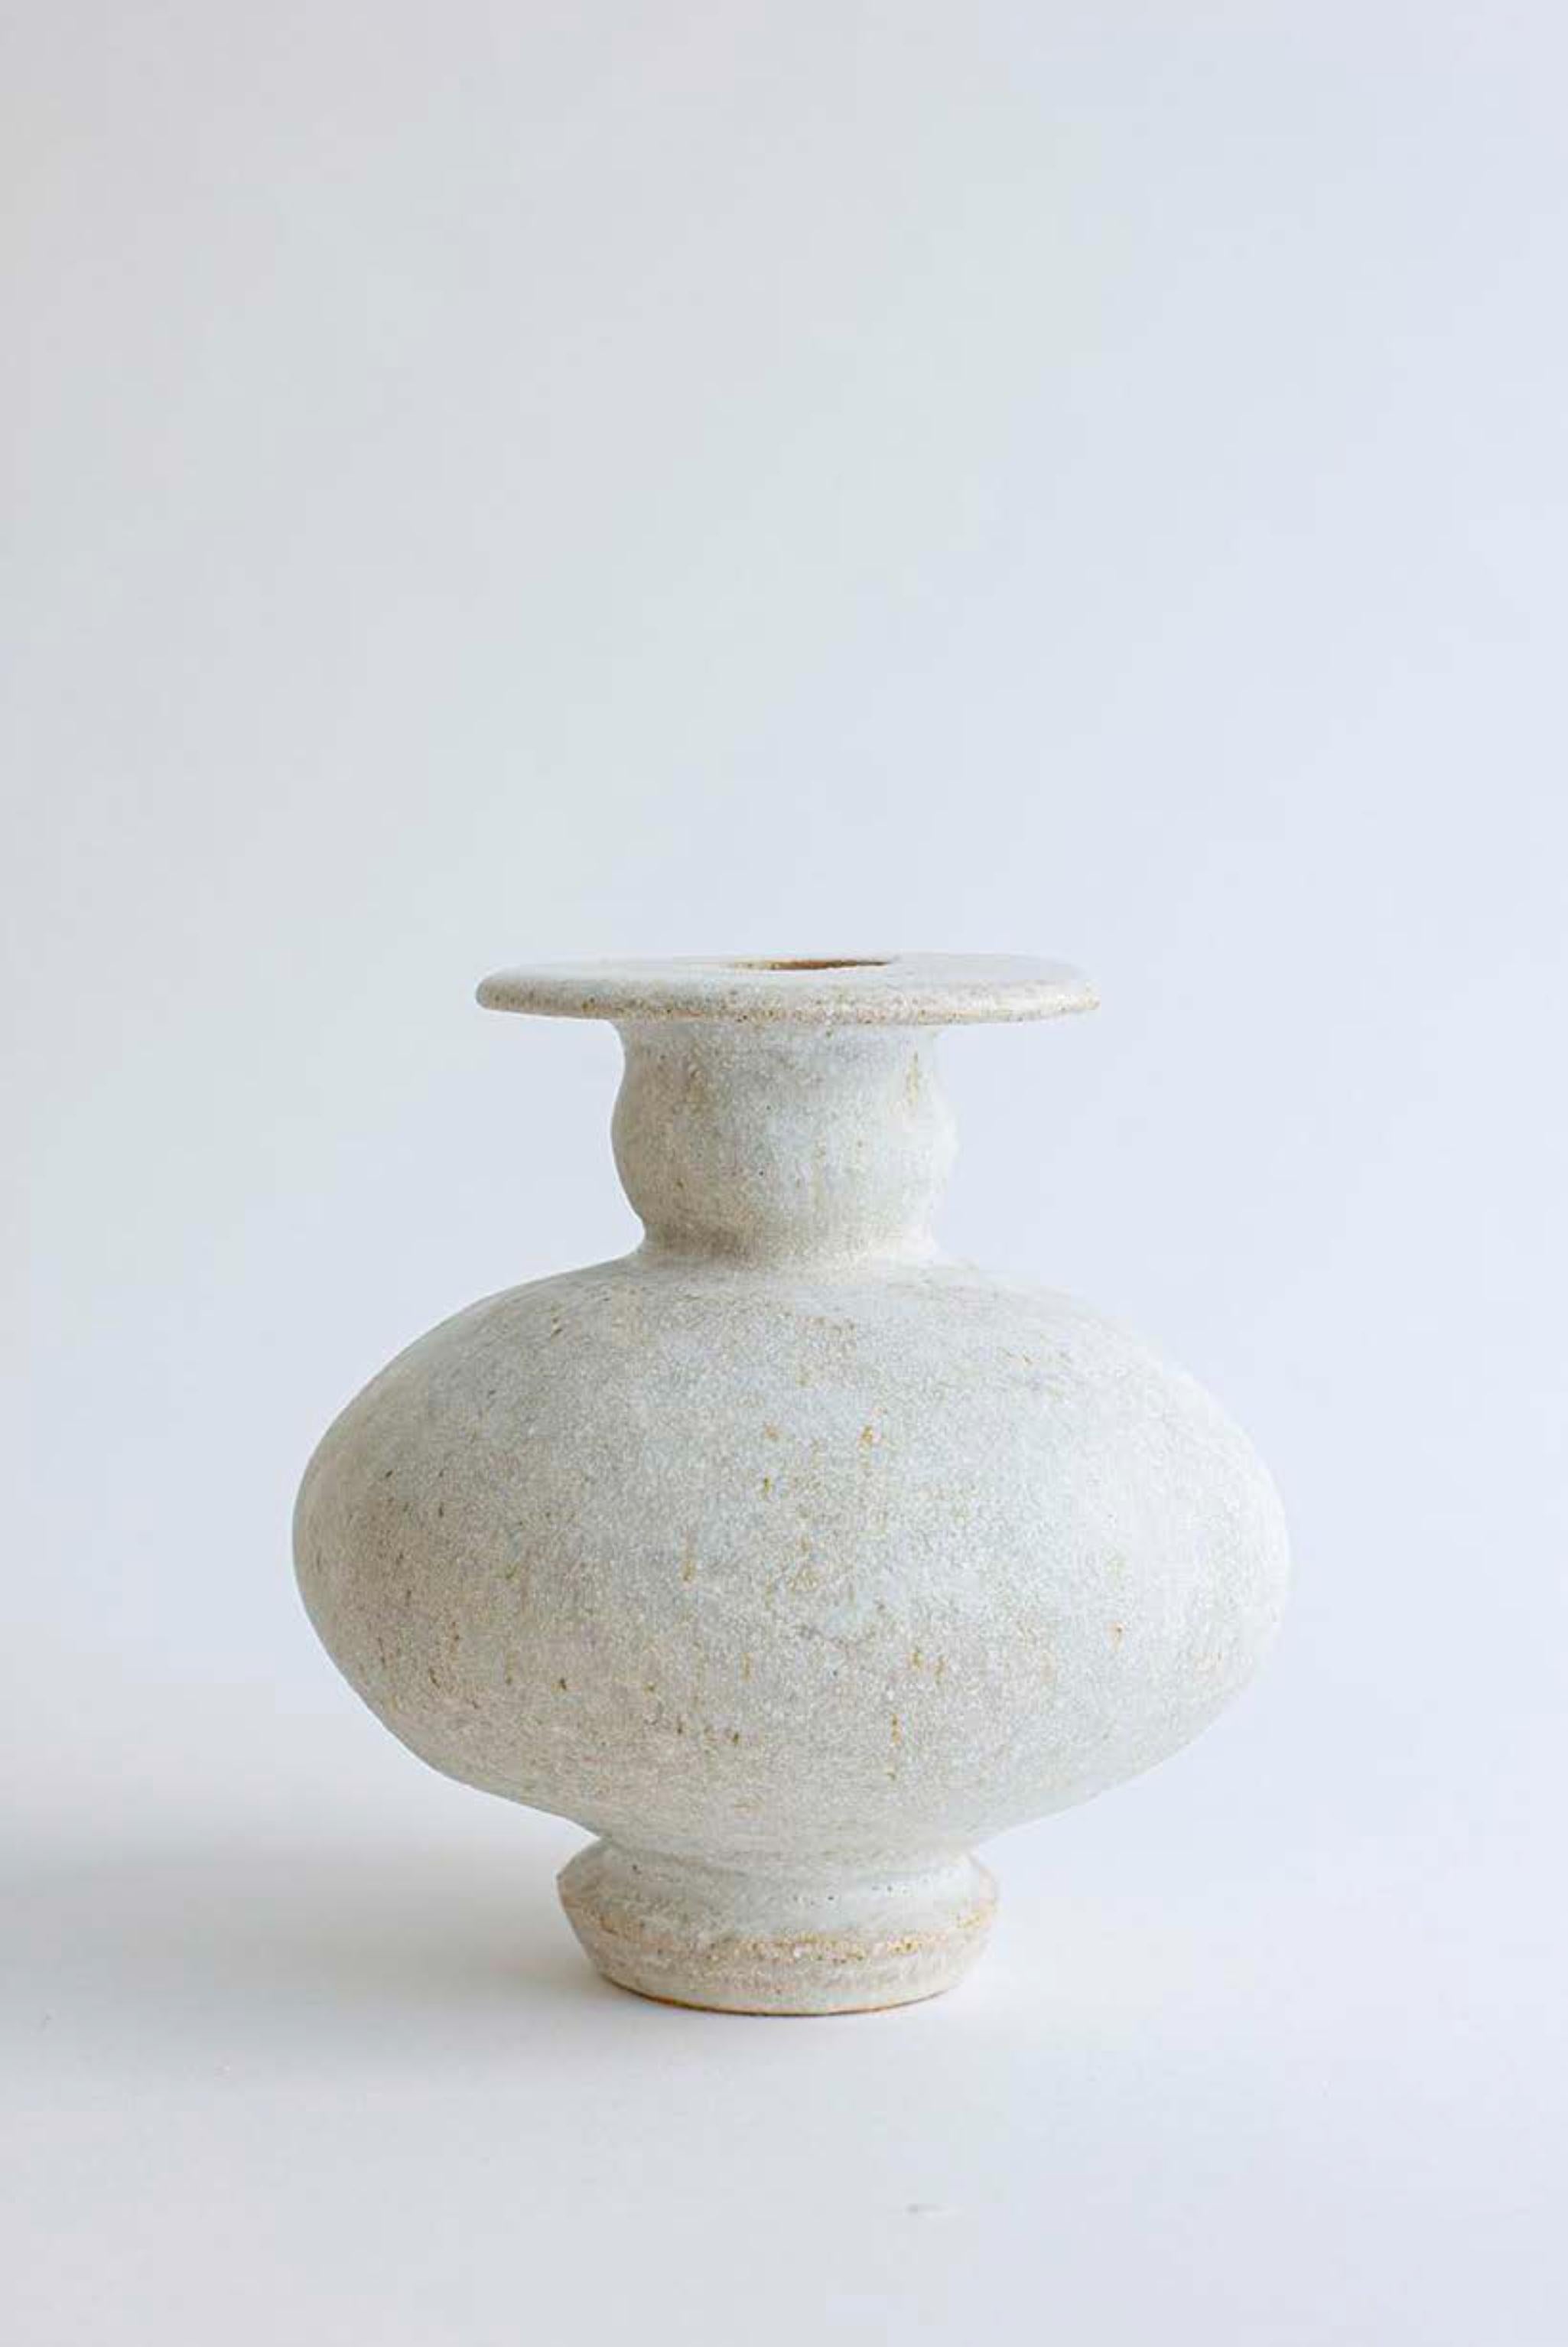 Einzigartige Vase Cálpide Blanco, hueso von Raquel Vidal und Pedro Paz
Abmessungen: Ø 16 x 16 cm
MATERIALIEN: Handgeformtes glasiertes Steingut.

Die Arq-Serie ist aus unserer eigenen Produktion hervorgegangen. Sie lässt sich von der Archäologie